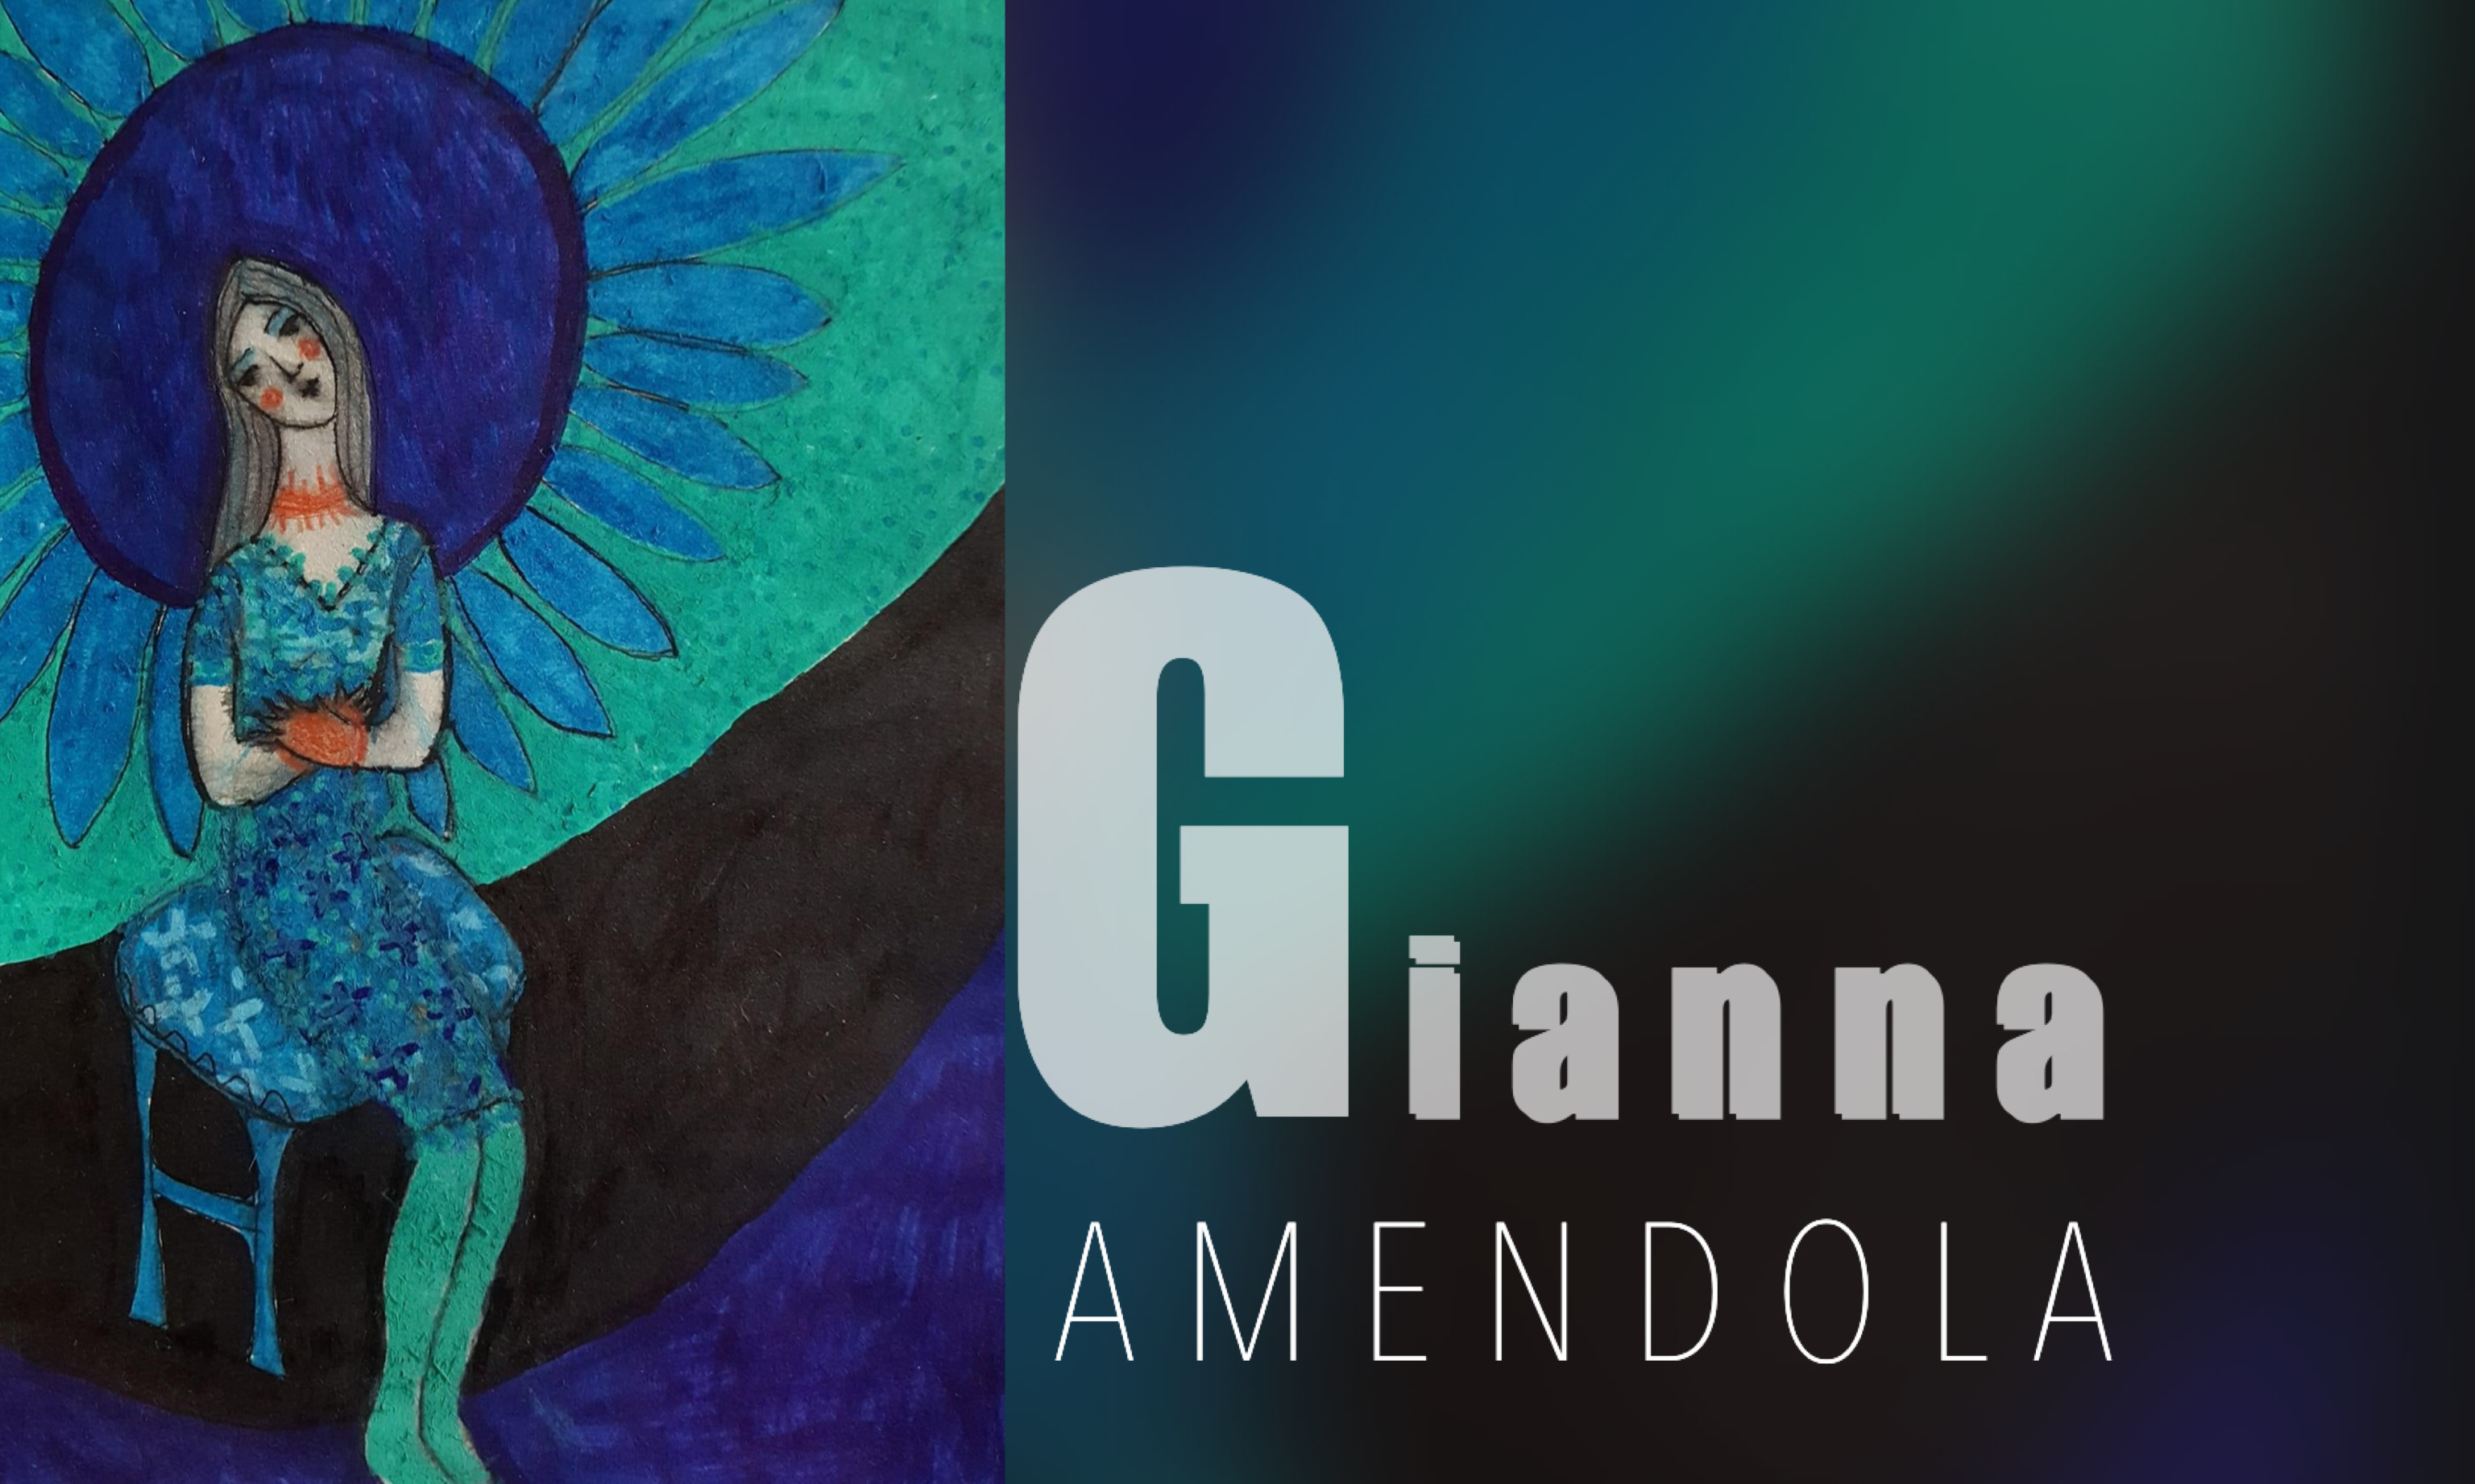 Gianna Amendola a cura di Maria Marchese per la Rubrica Divagazioni sull’arte su L’ArteCheMiPiace